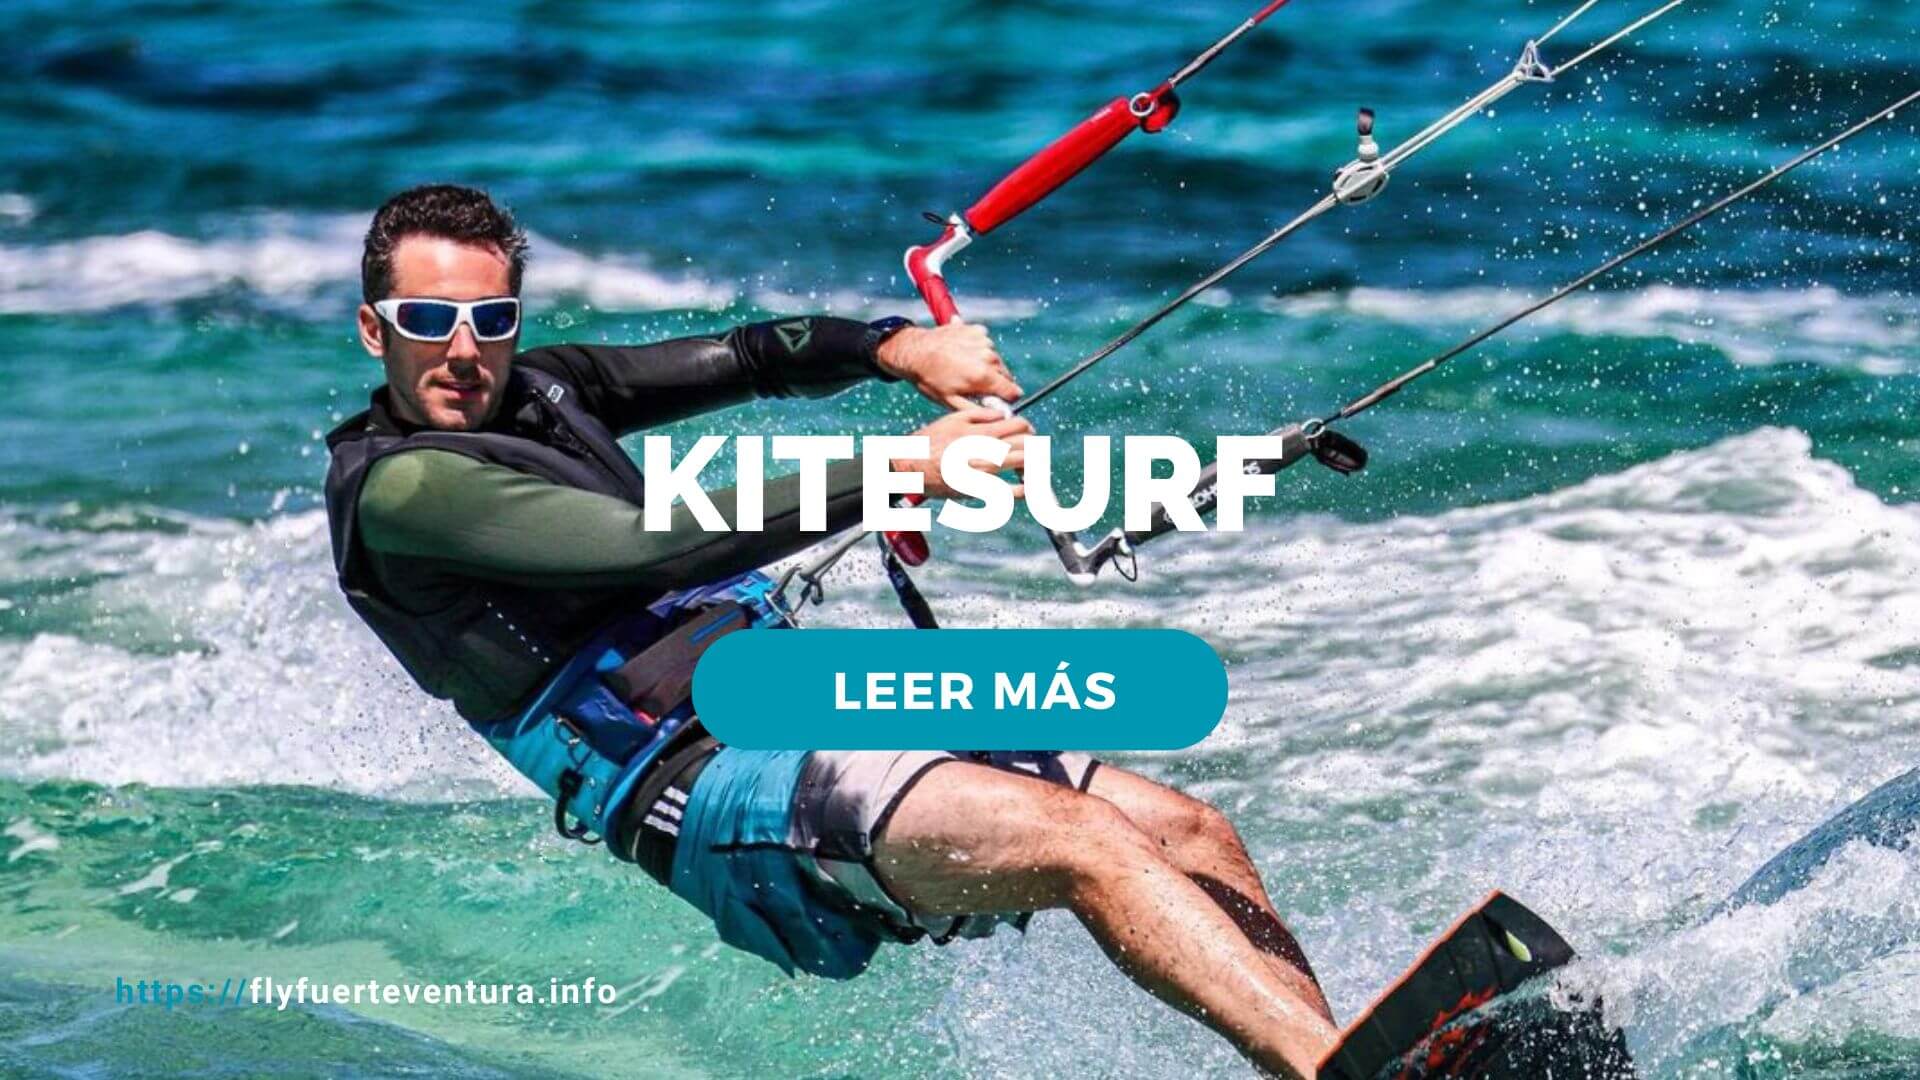 Fuerteventura y el kitesurf, toda la información en la guía más grande para kitesurfistas de Fuerteventura.